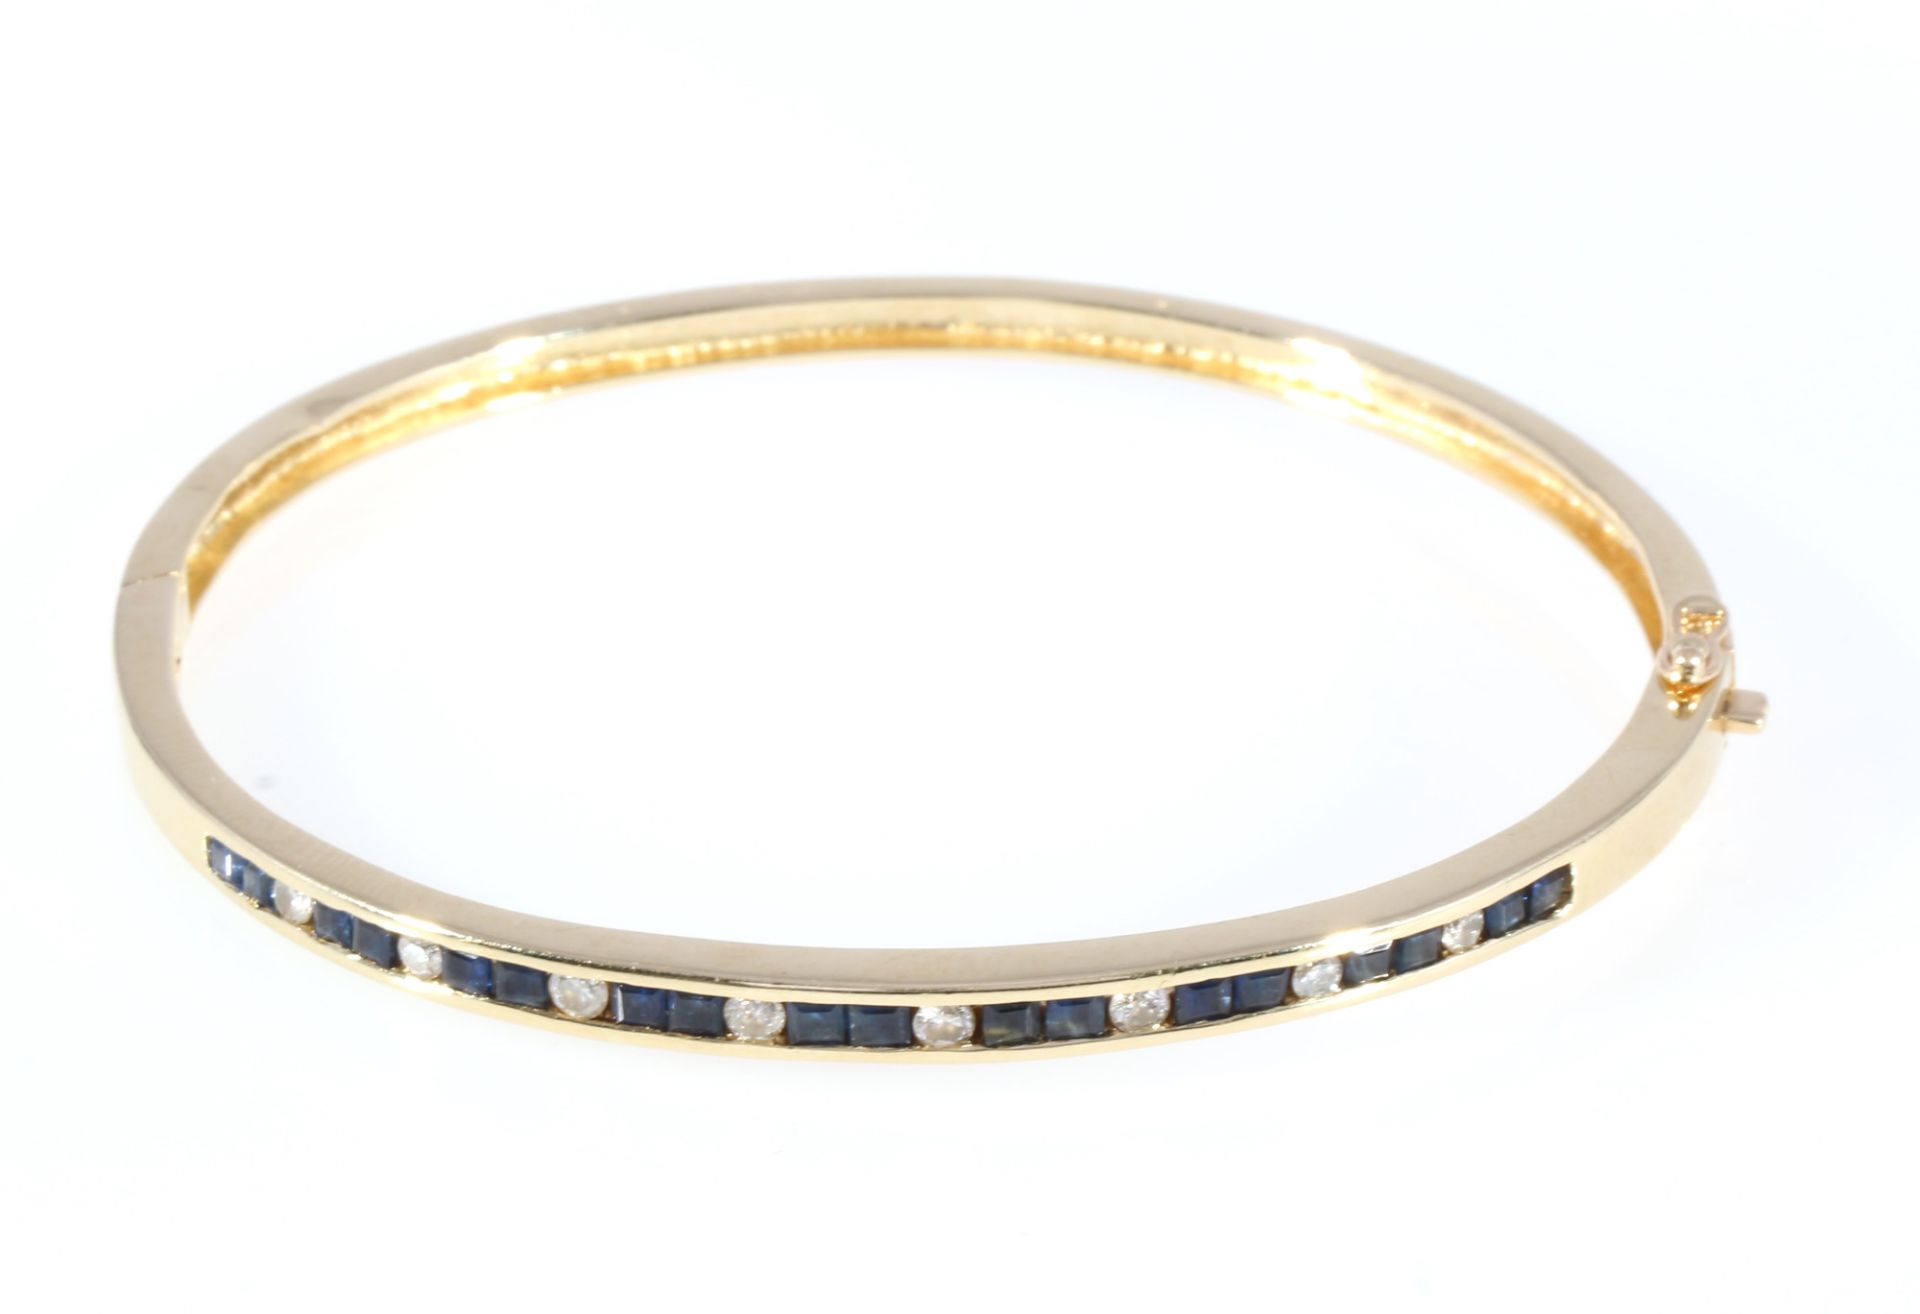 585 gold bracelet with diamonds and sapphires, 14K Gold Armreif mit Brillanten und Saphiren, - Image 2 of 4